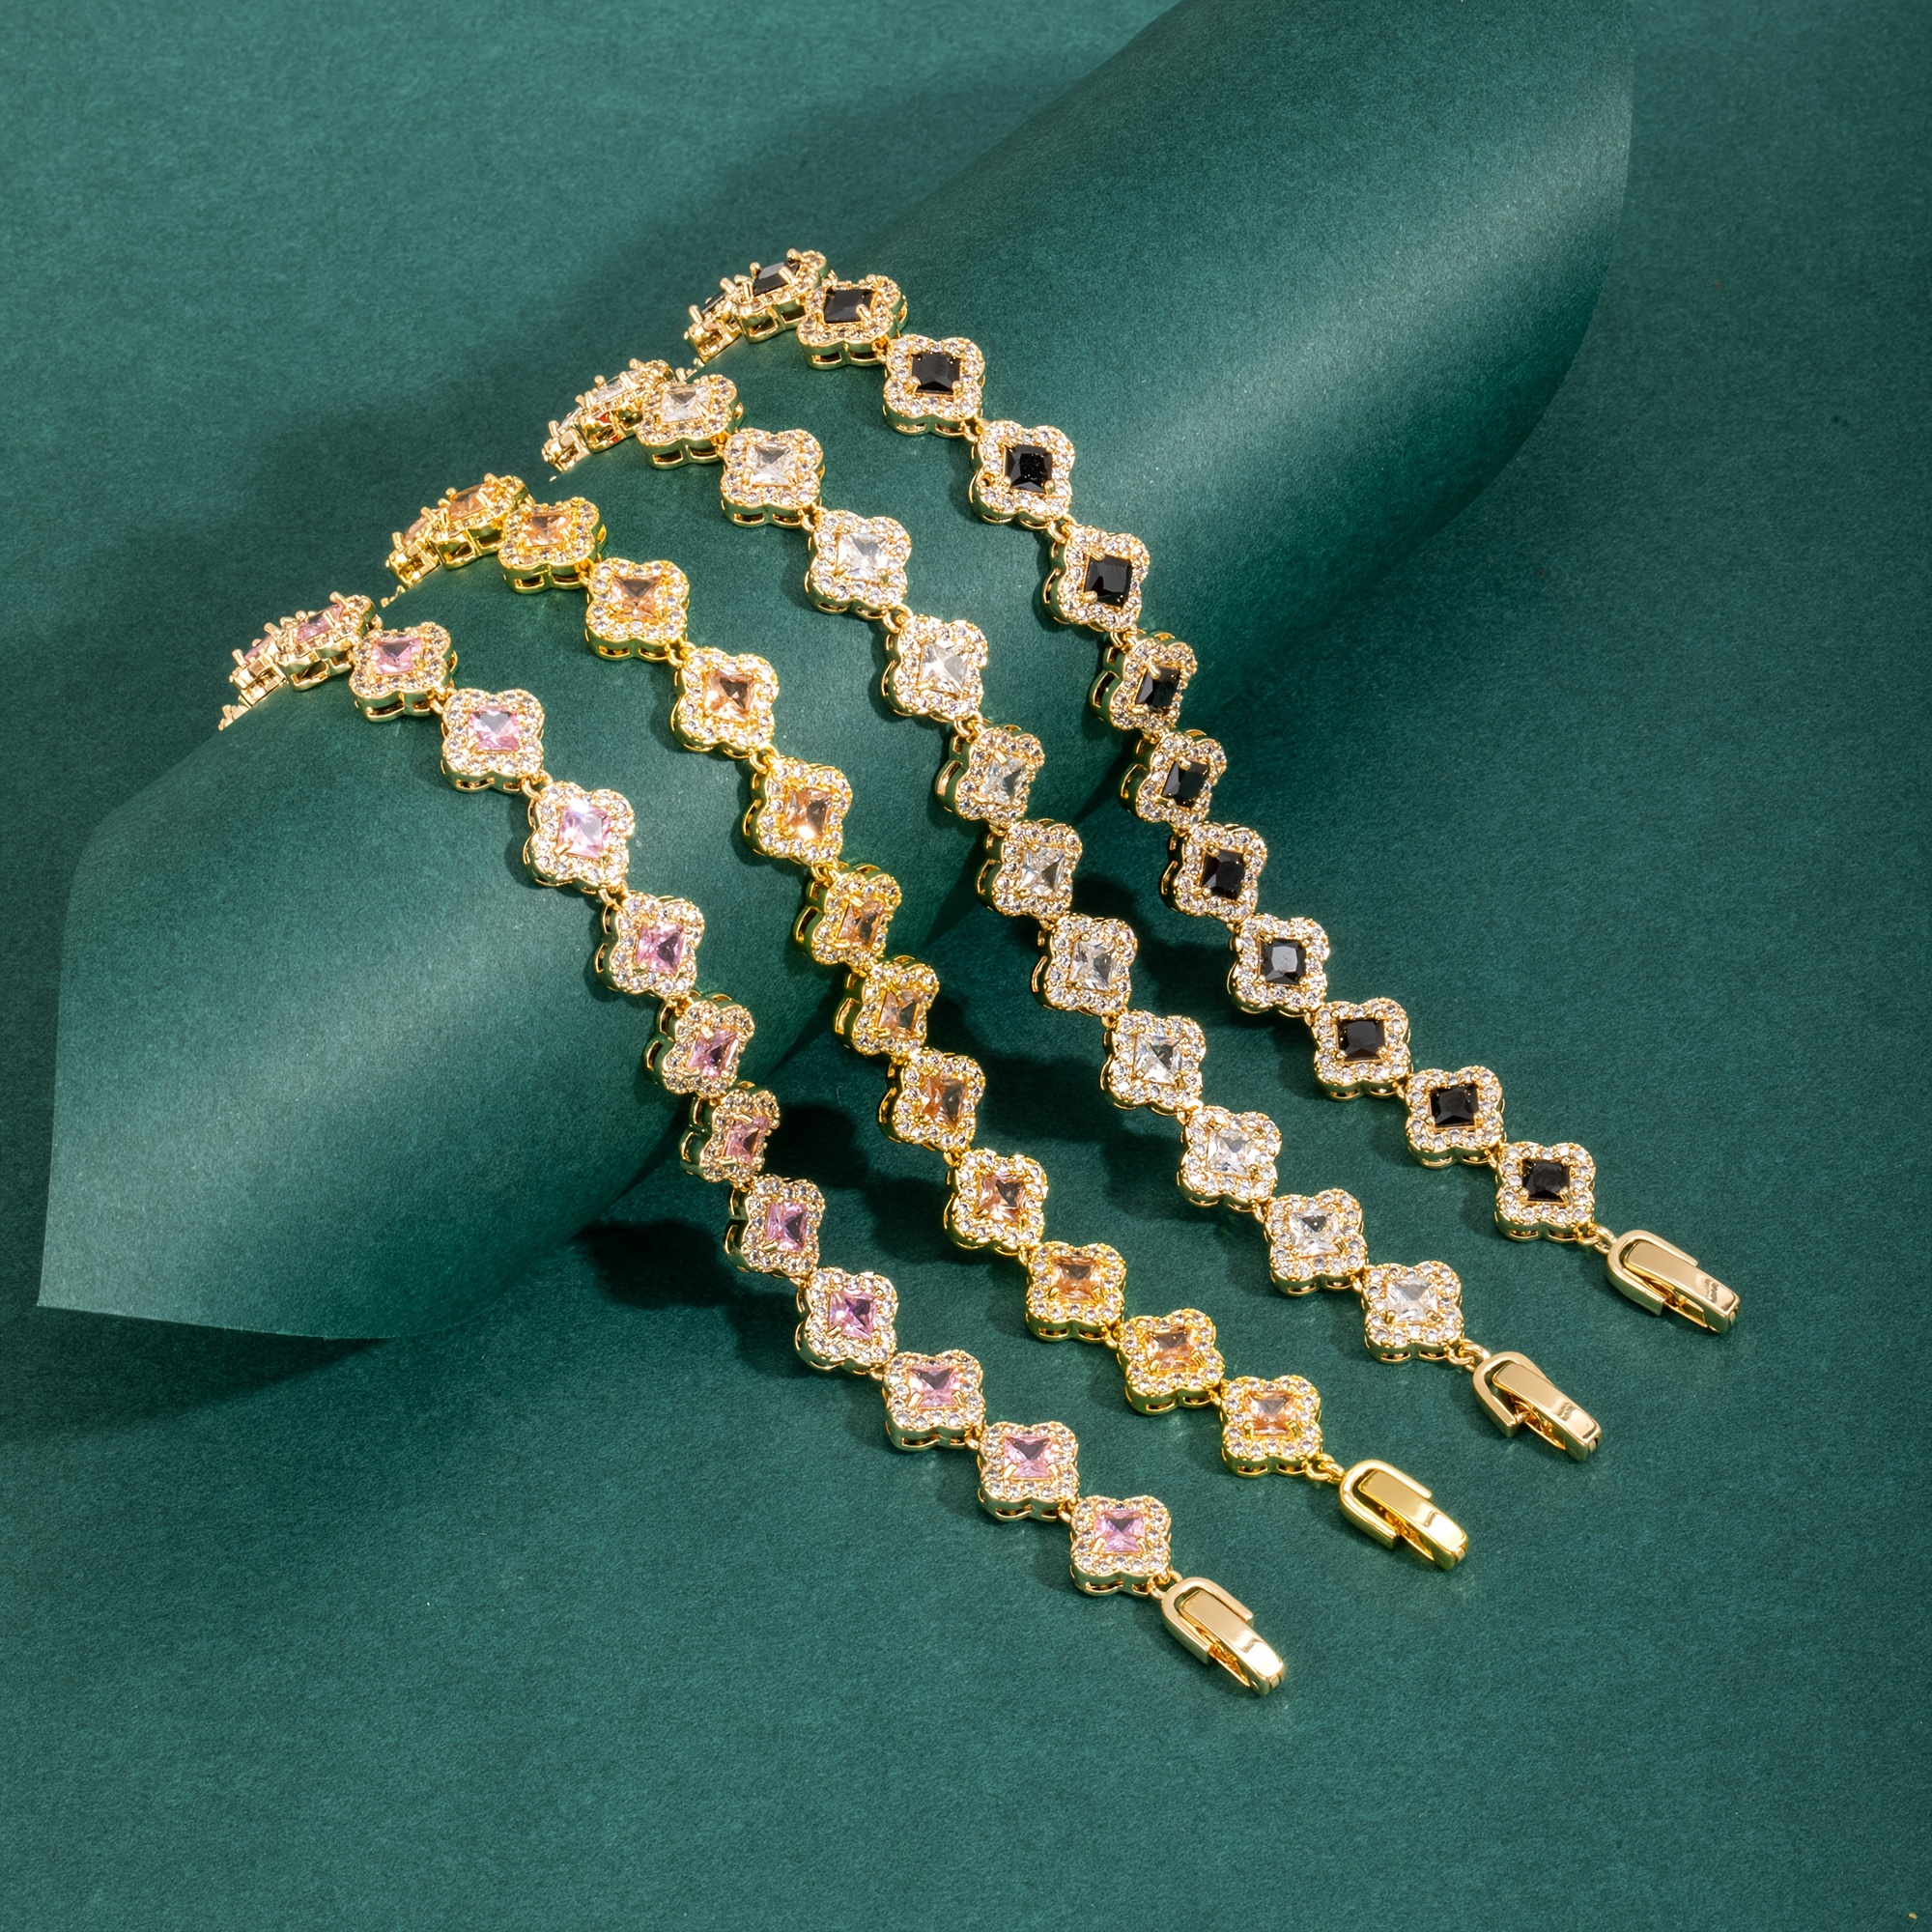 Mode diamant opale fleur trèfle à quatre feuilles pendentif cheville bijoux  cadeau pour les femmes Bracelet en or, Bracelets de mode